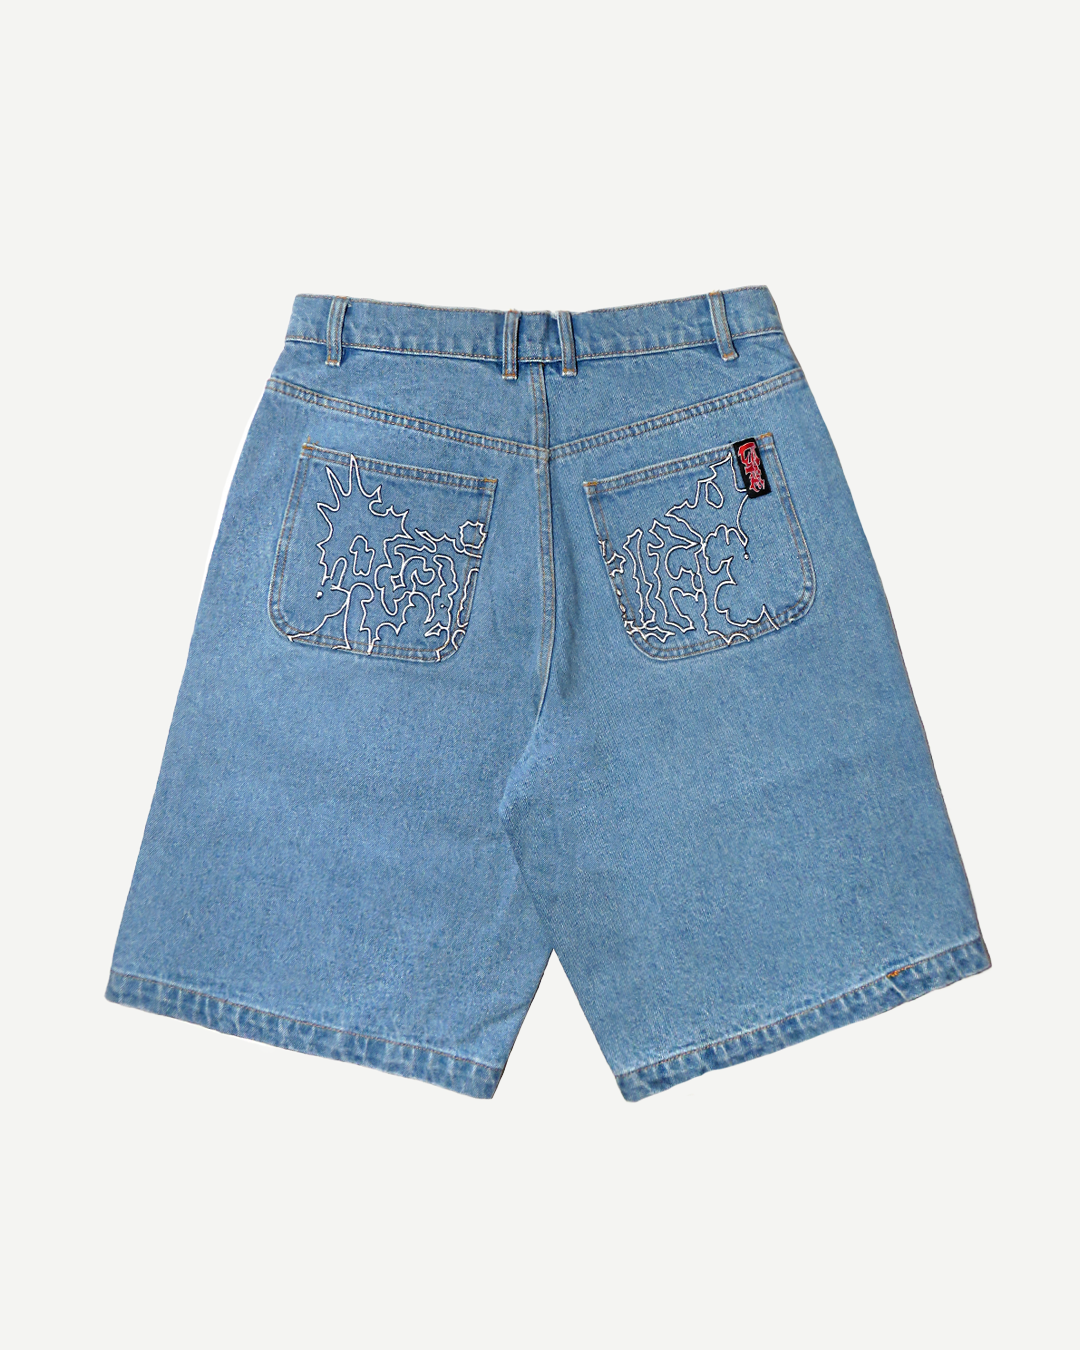 RTLO Denim Shorts, Washed Blue